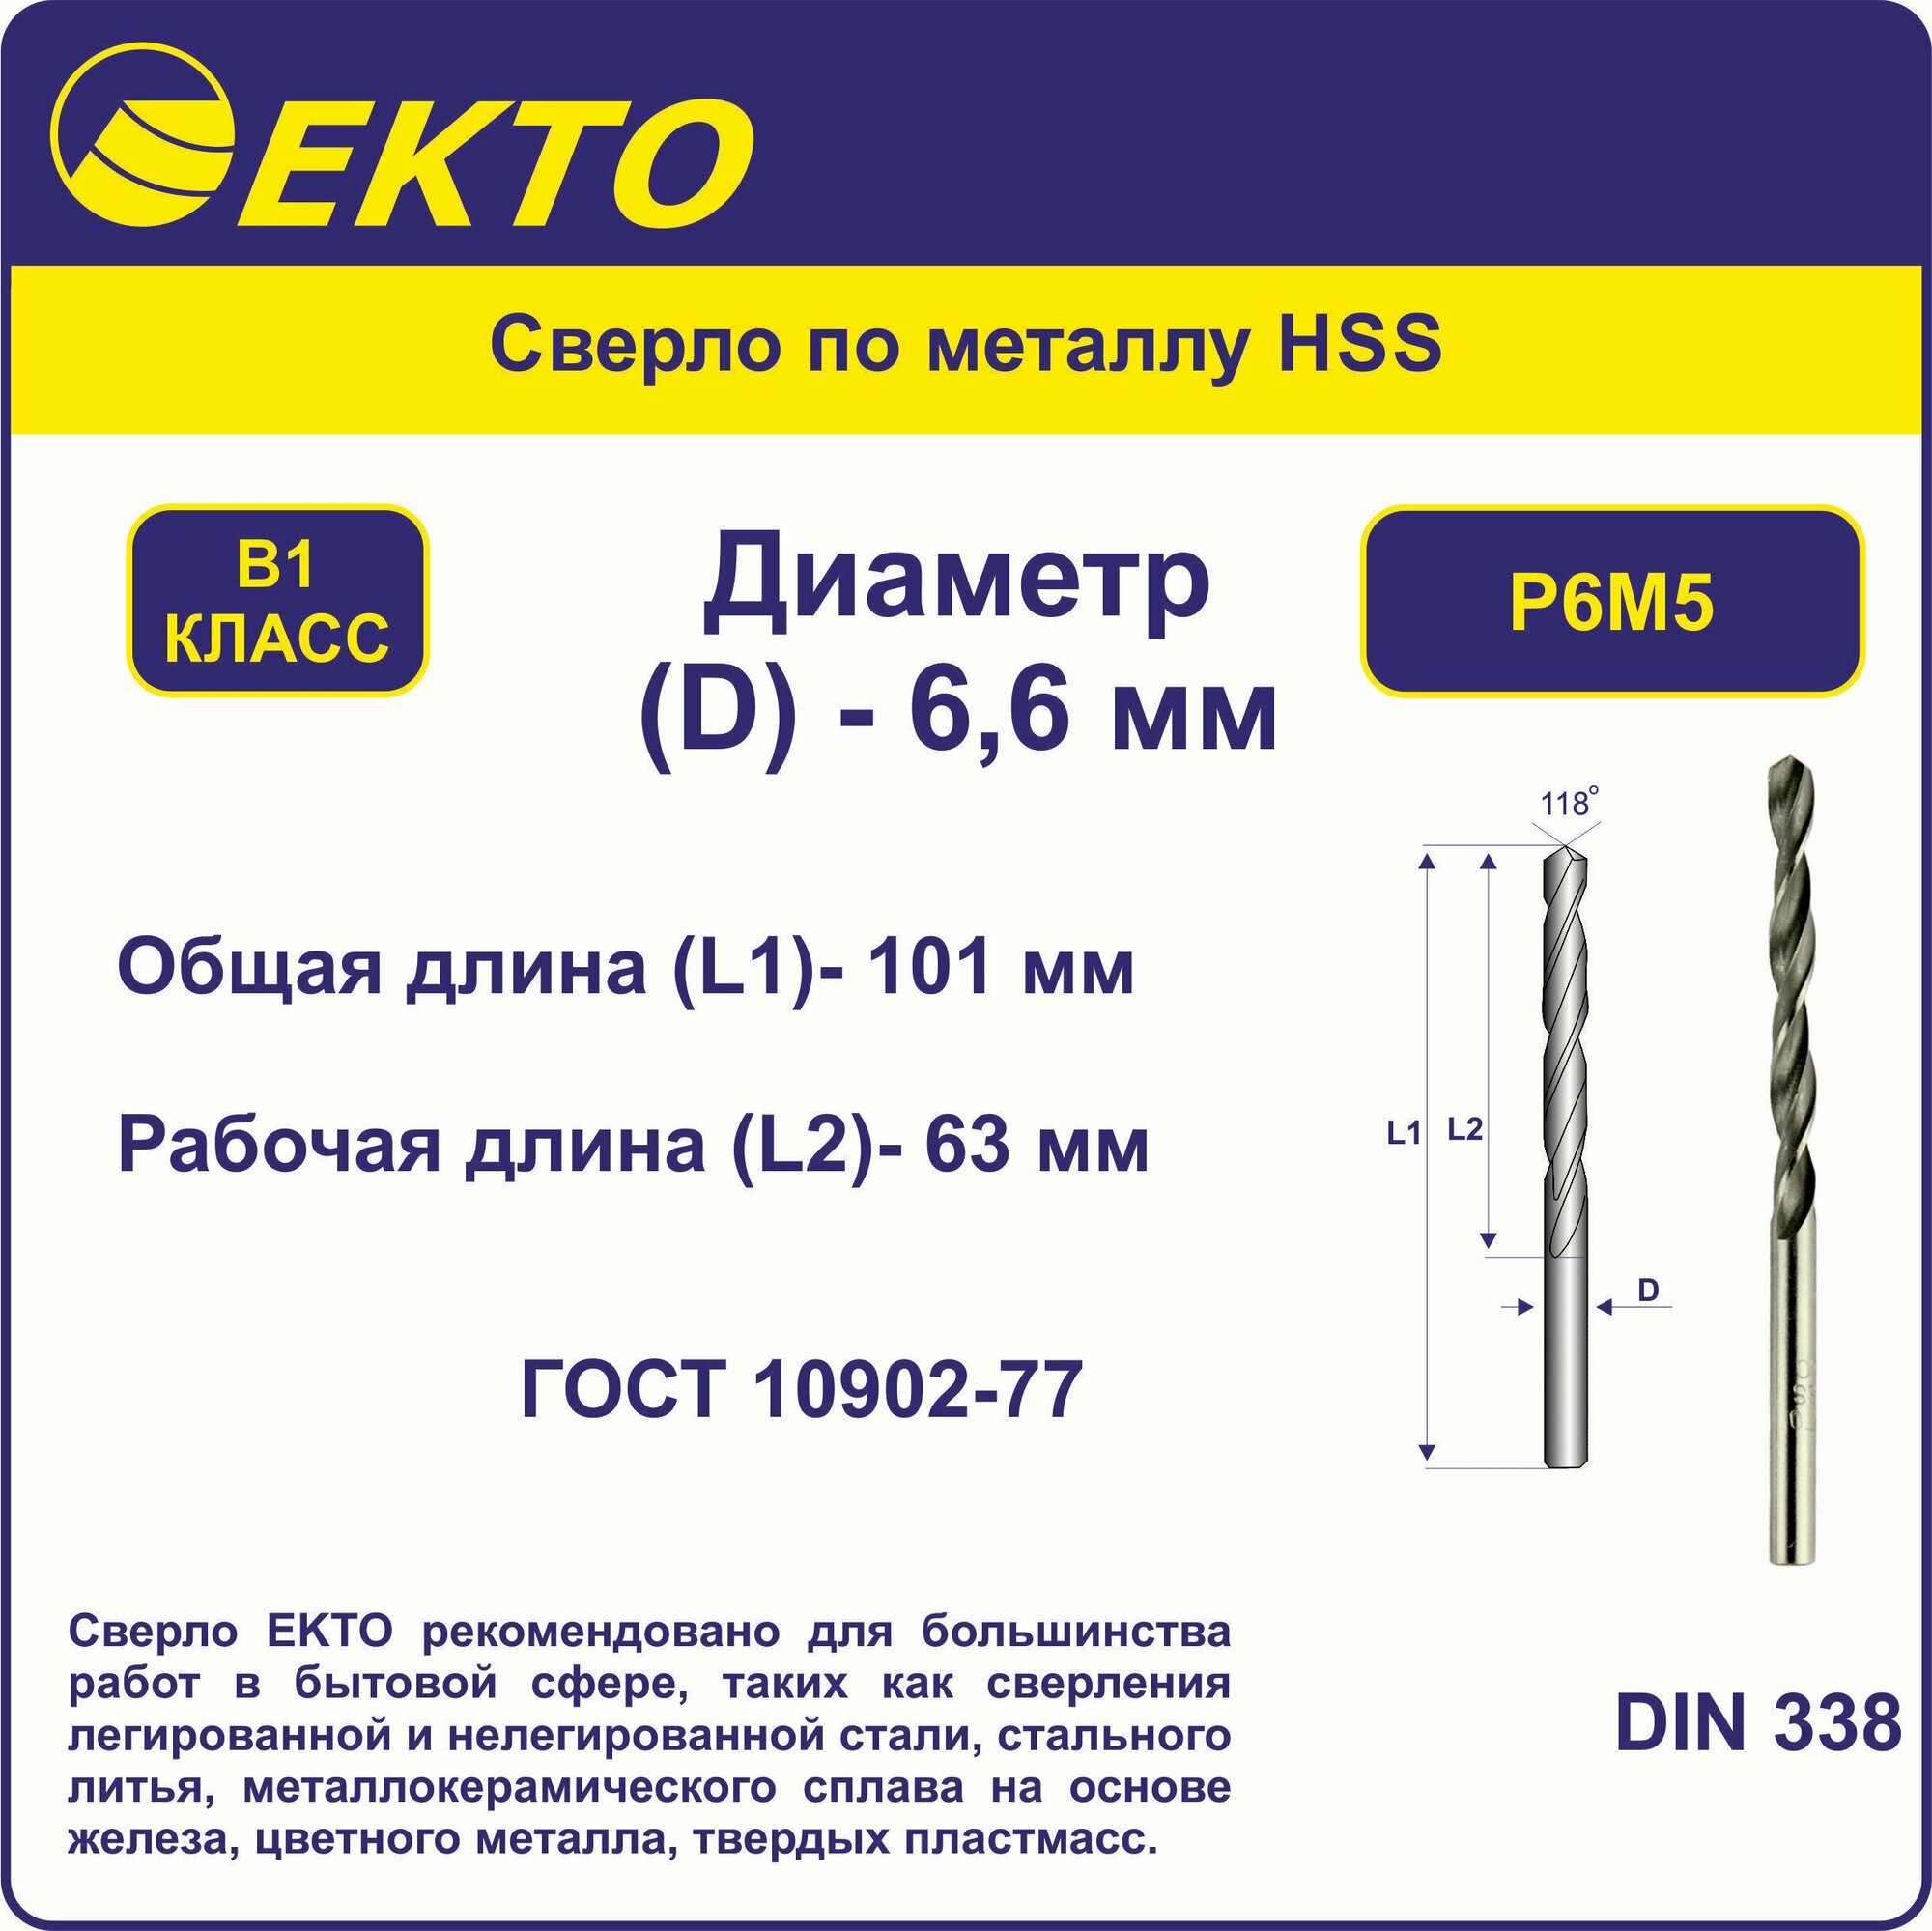 Сверло по металлу HSS 66 мм цилиндрический хвостовик EKTO